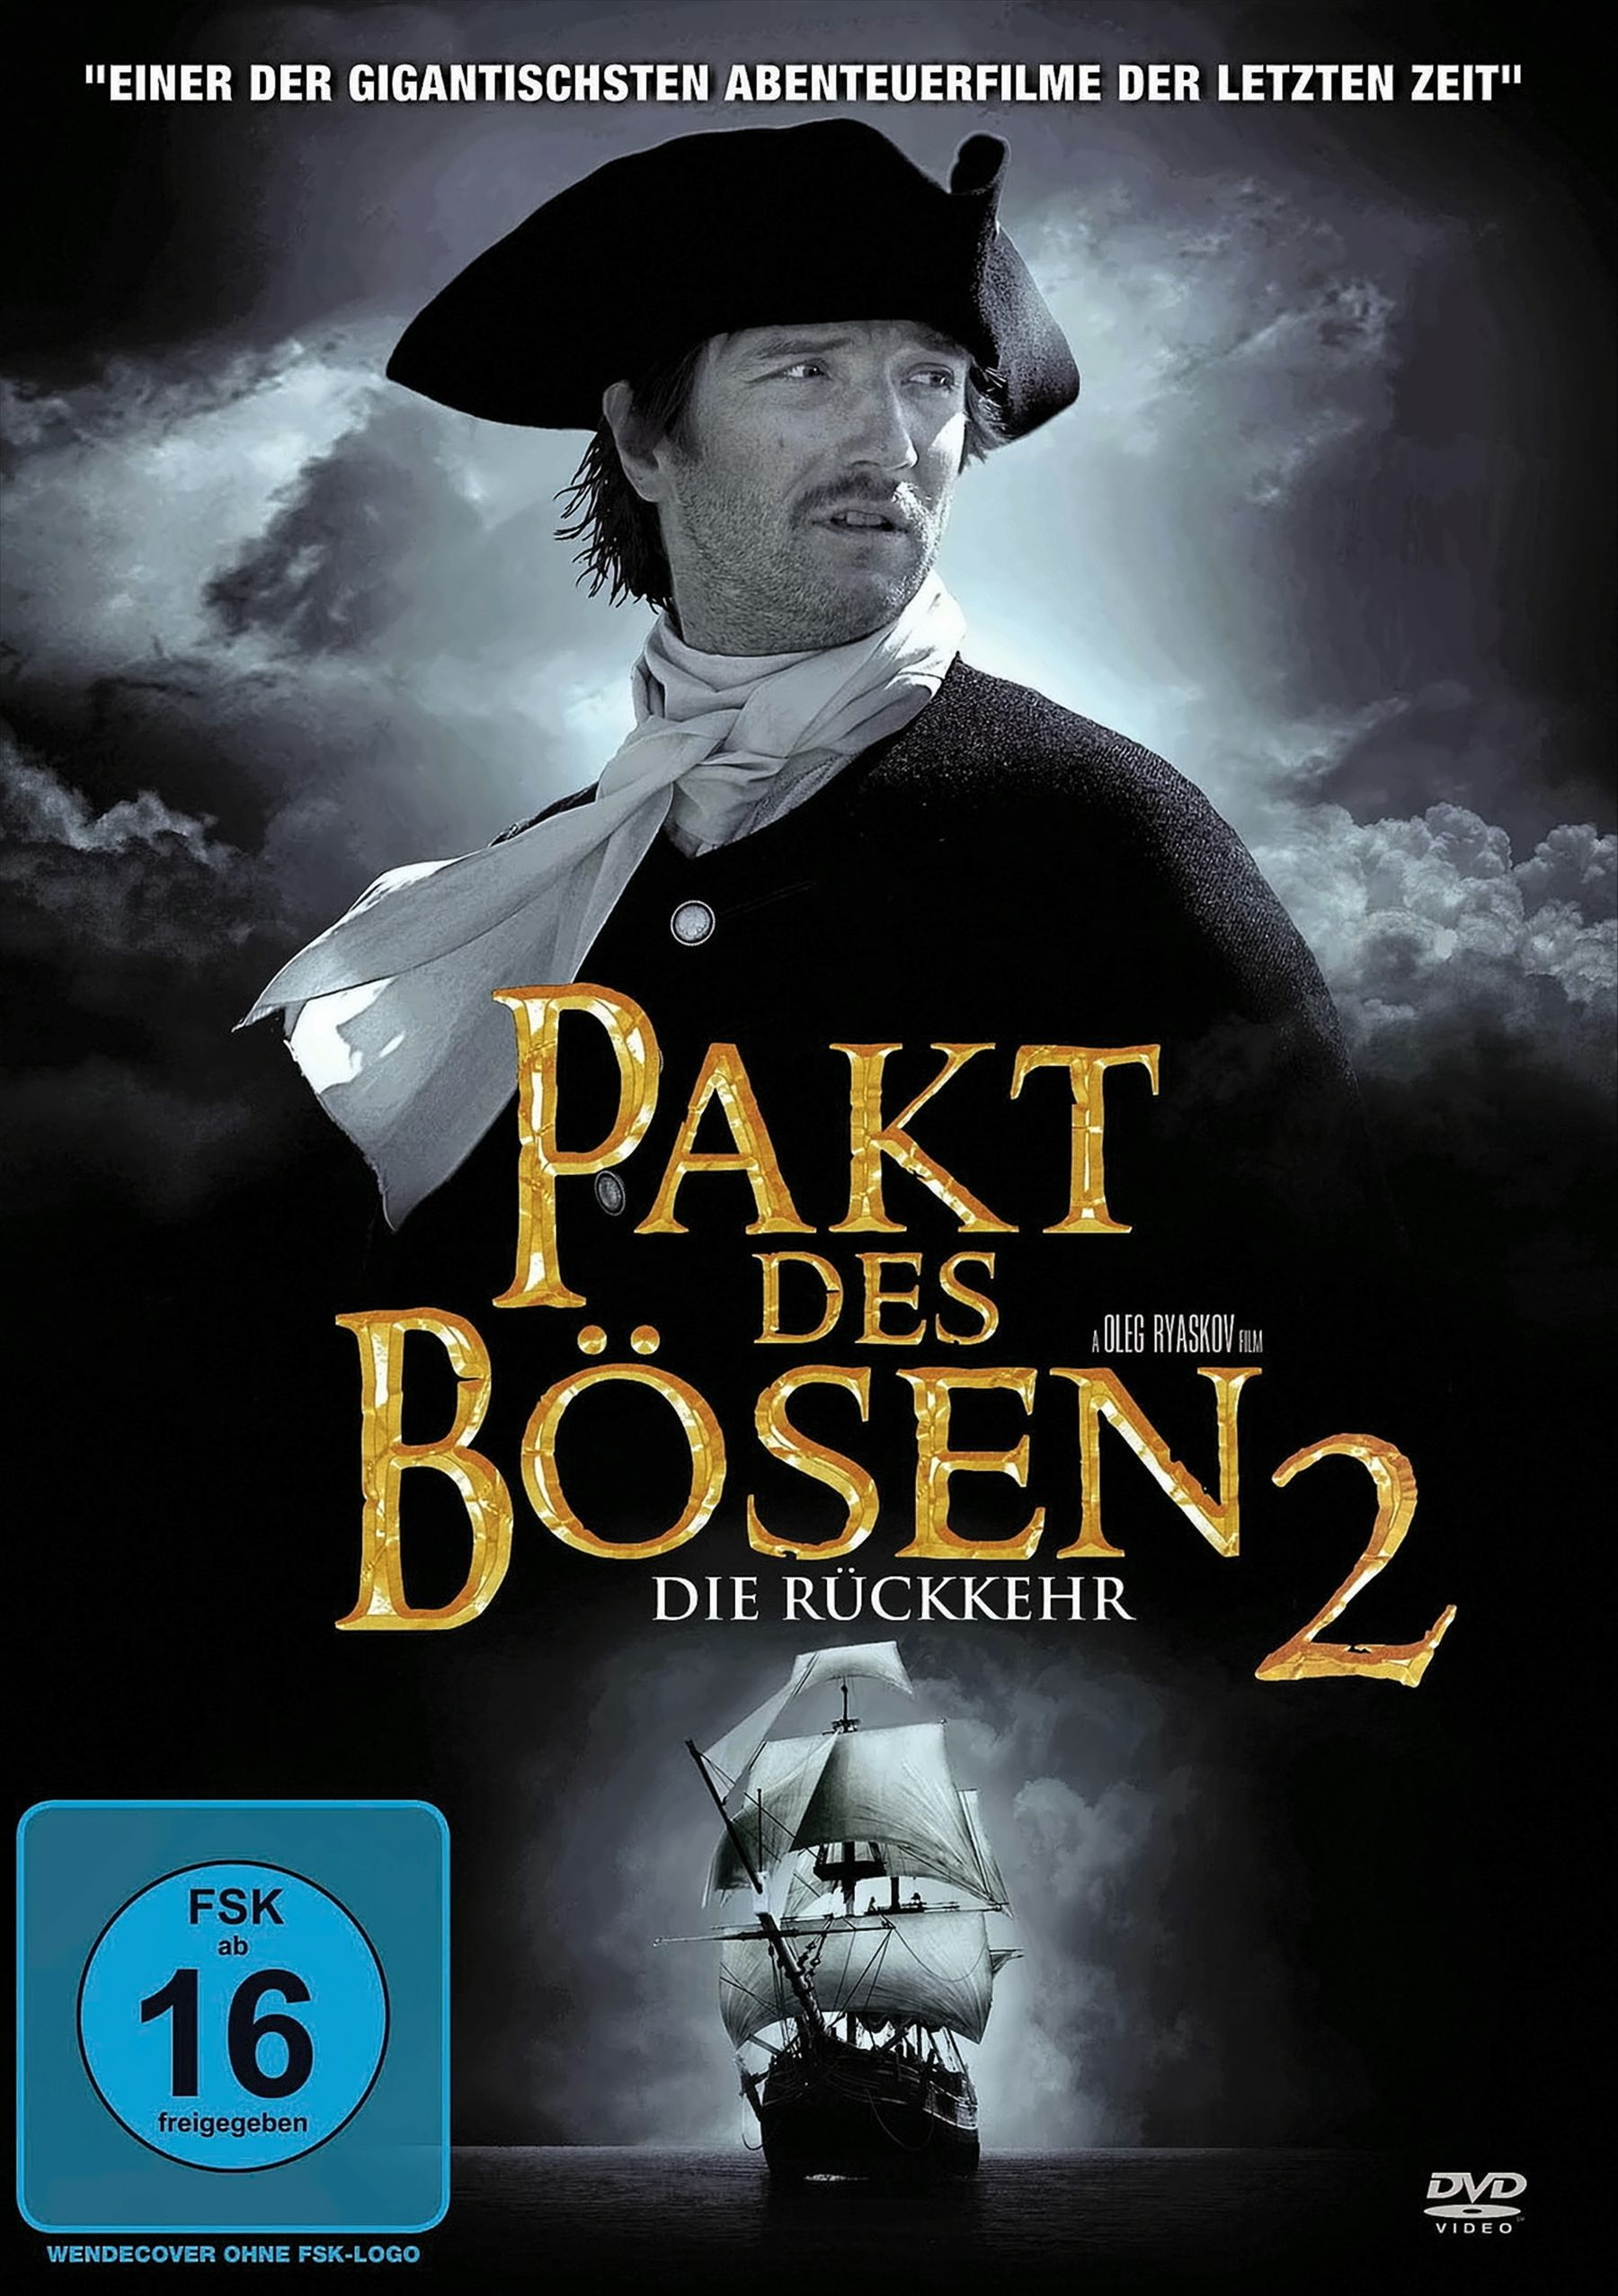 Pakt des Bösen 2 - Rückkehr DVD Die